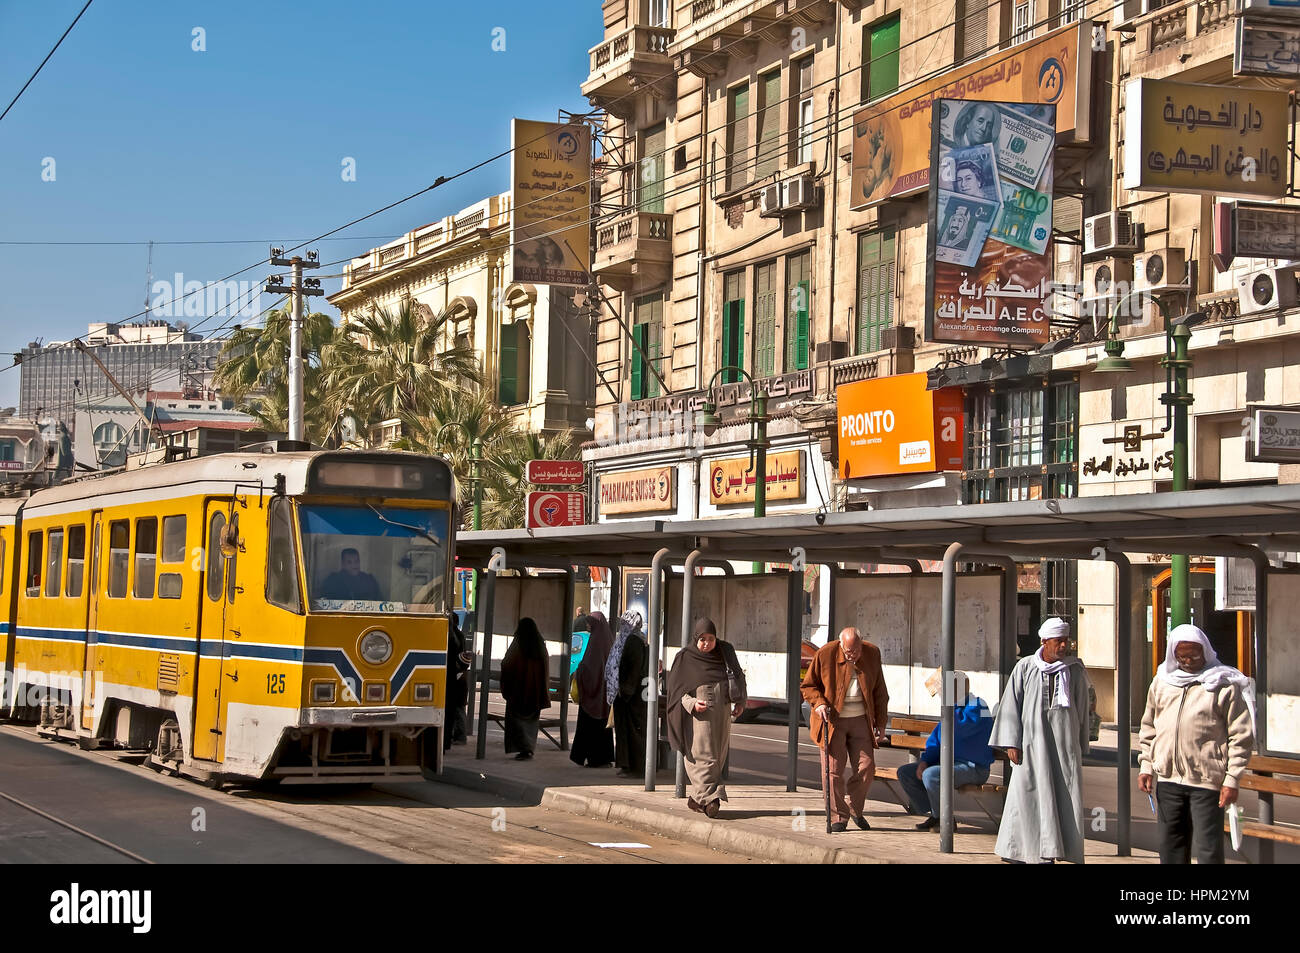 Alessandria street scene che mostrano il tram giallo, segni arabi e musulmani in attesa presso la stazione del tram Foto Stock